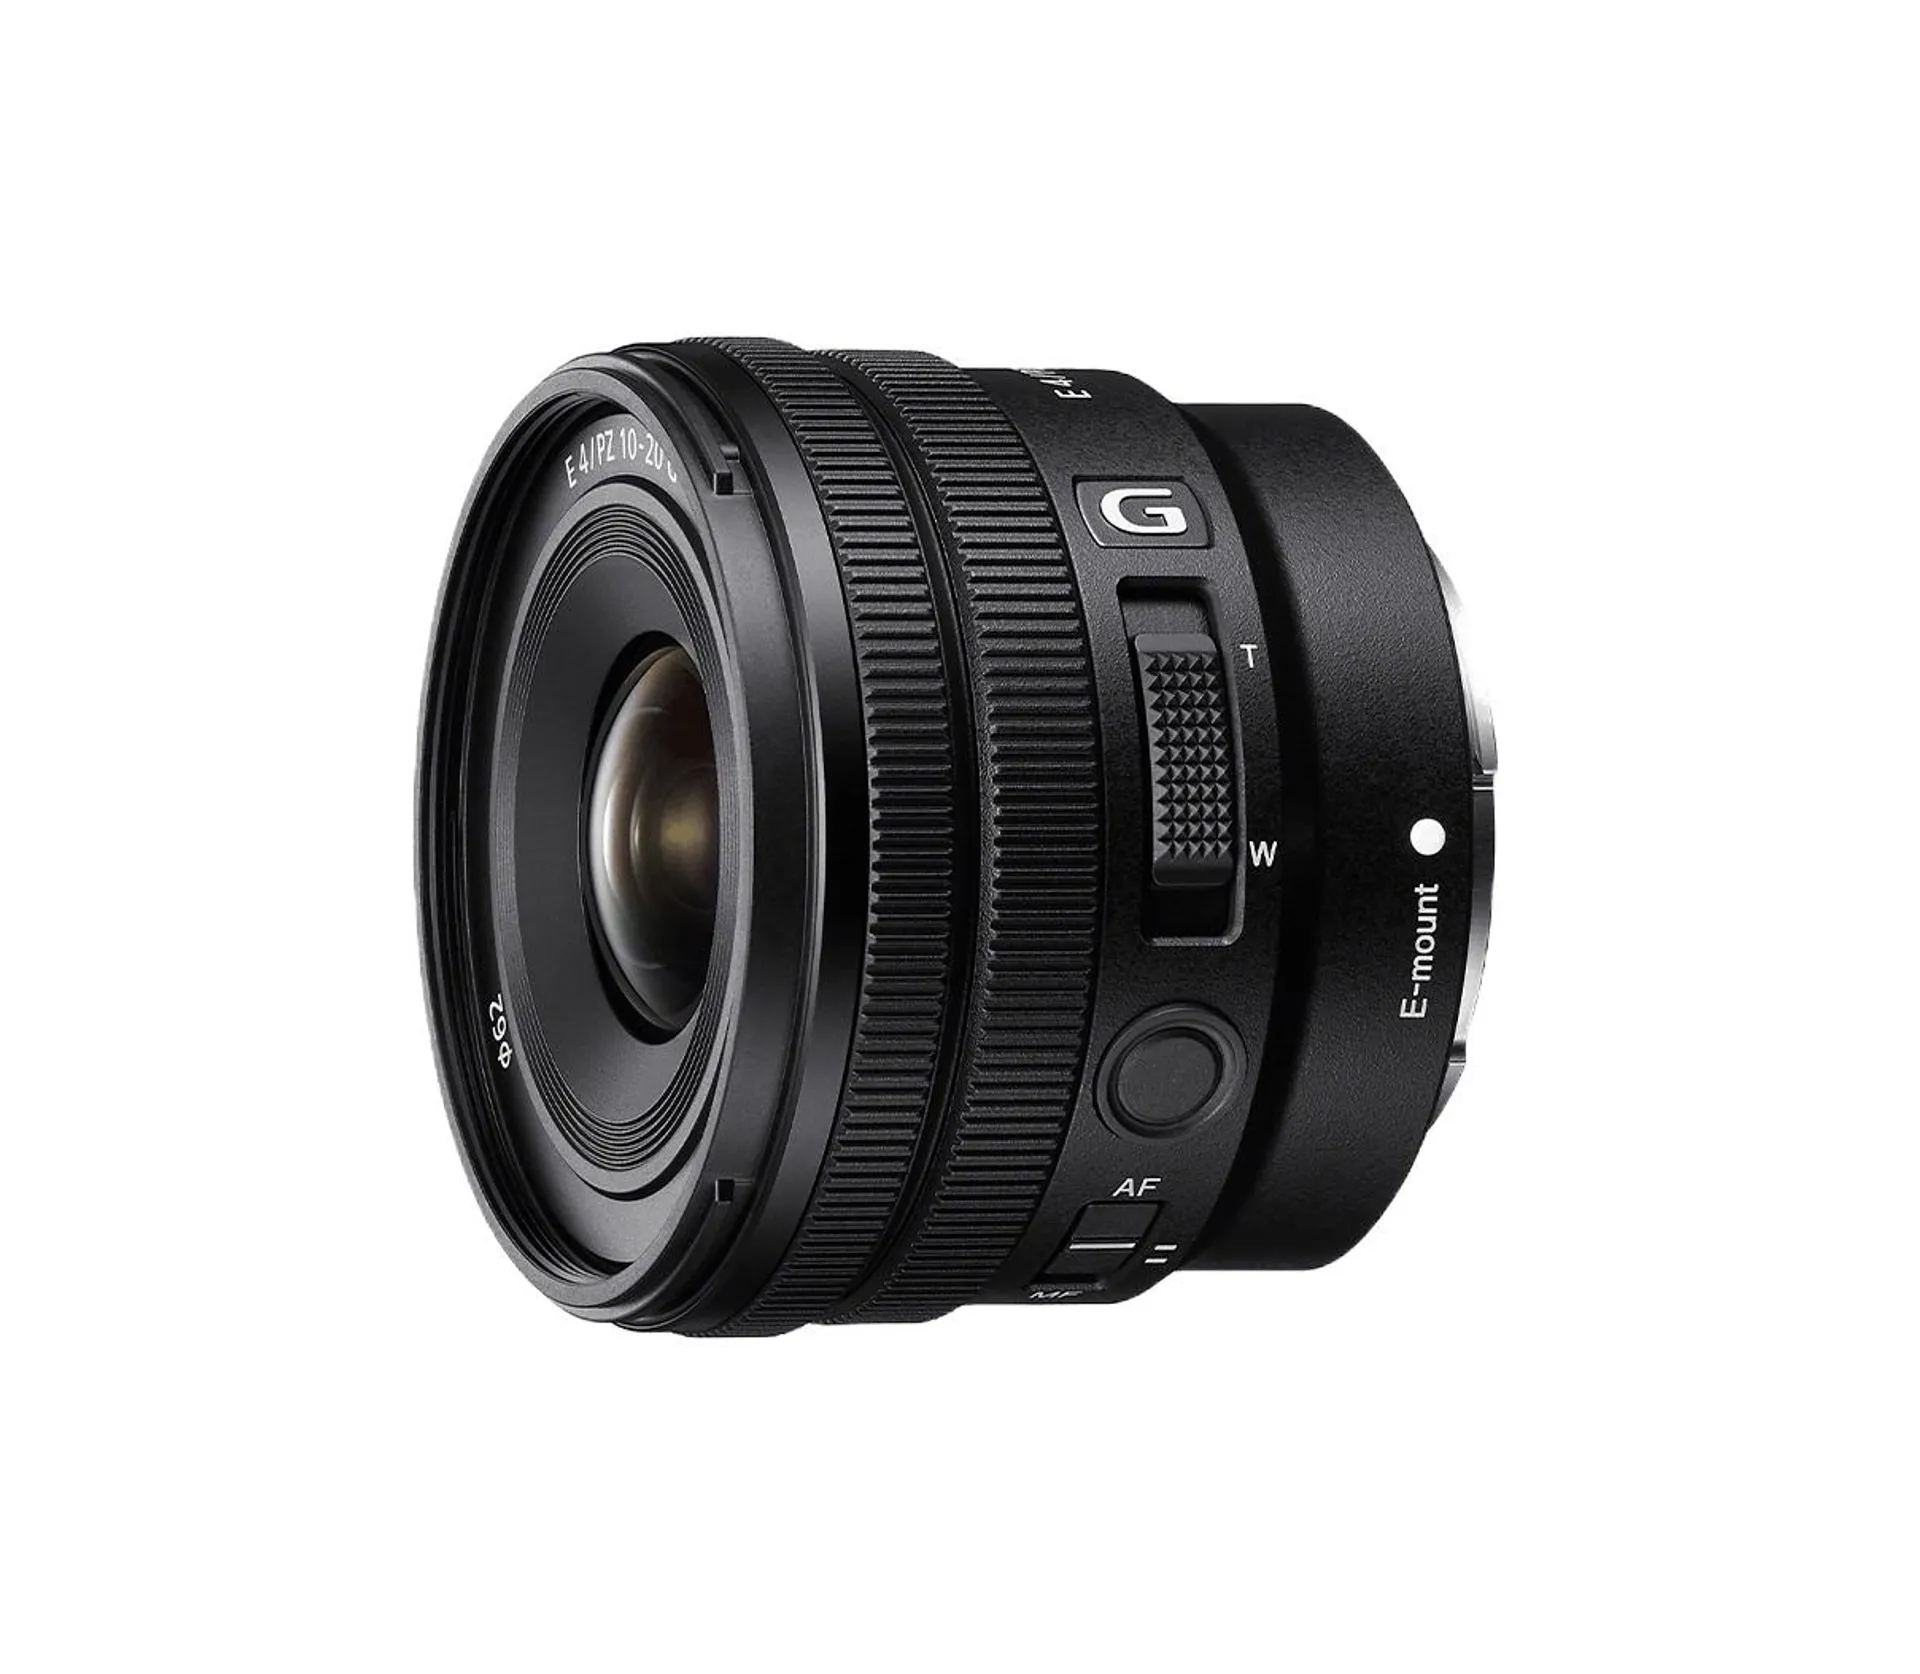 E PZ 10-20mm F4 G APS-C constant-aperture power zoom G lens